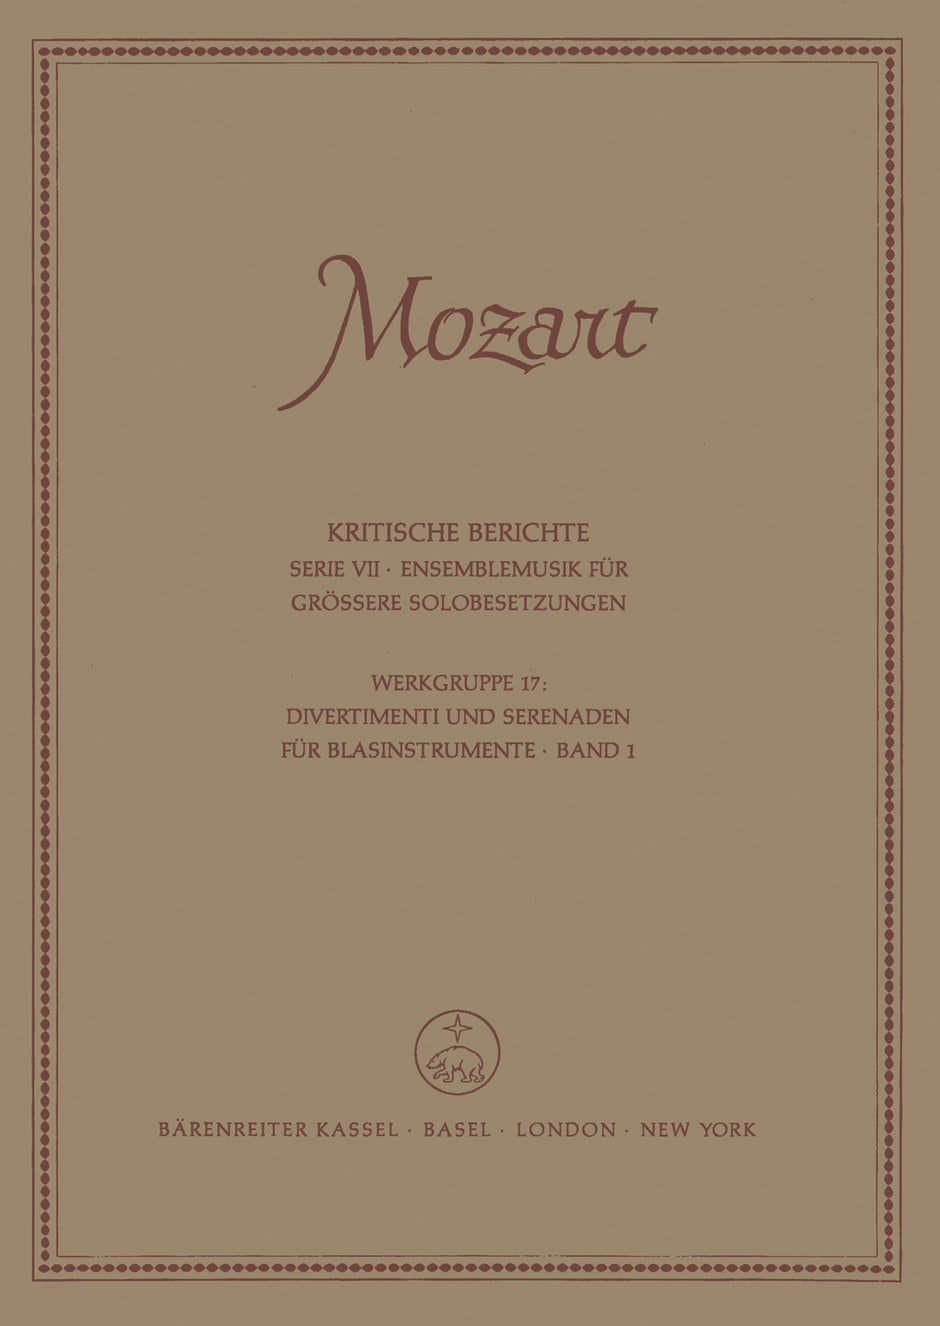 Mozart Divertimenti und Serenaden für Wind Instruments, Band 1 -Divertimenti: KV 166 (159d), 186 (159b), 188 (240b), 213, 240, 252 (240a), 253, 270. Anhänge.-